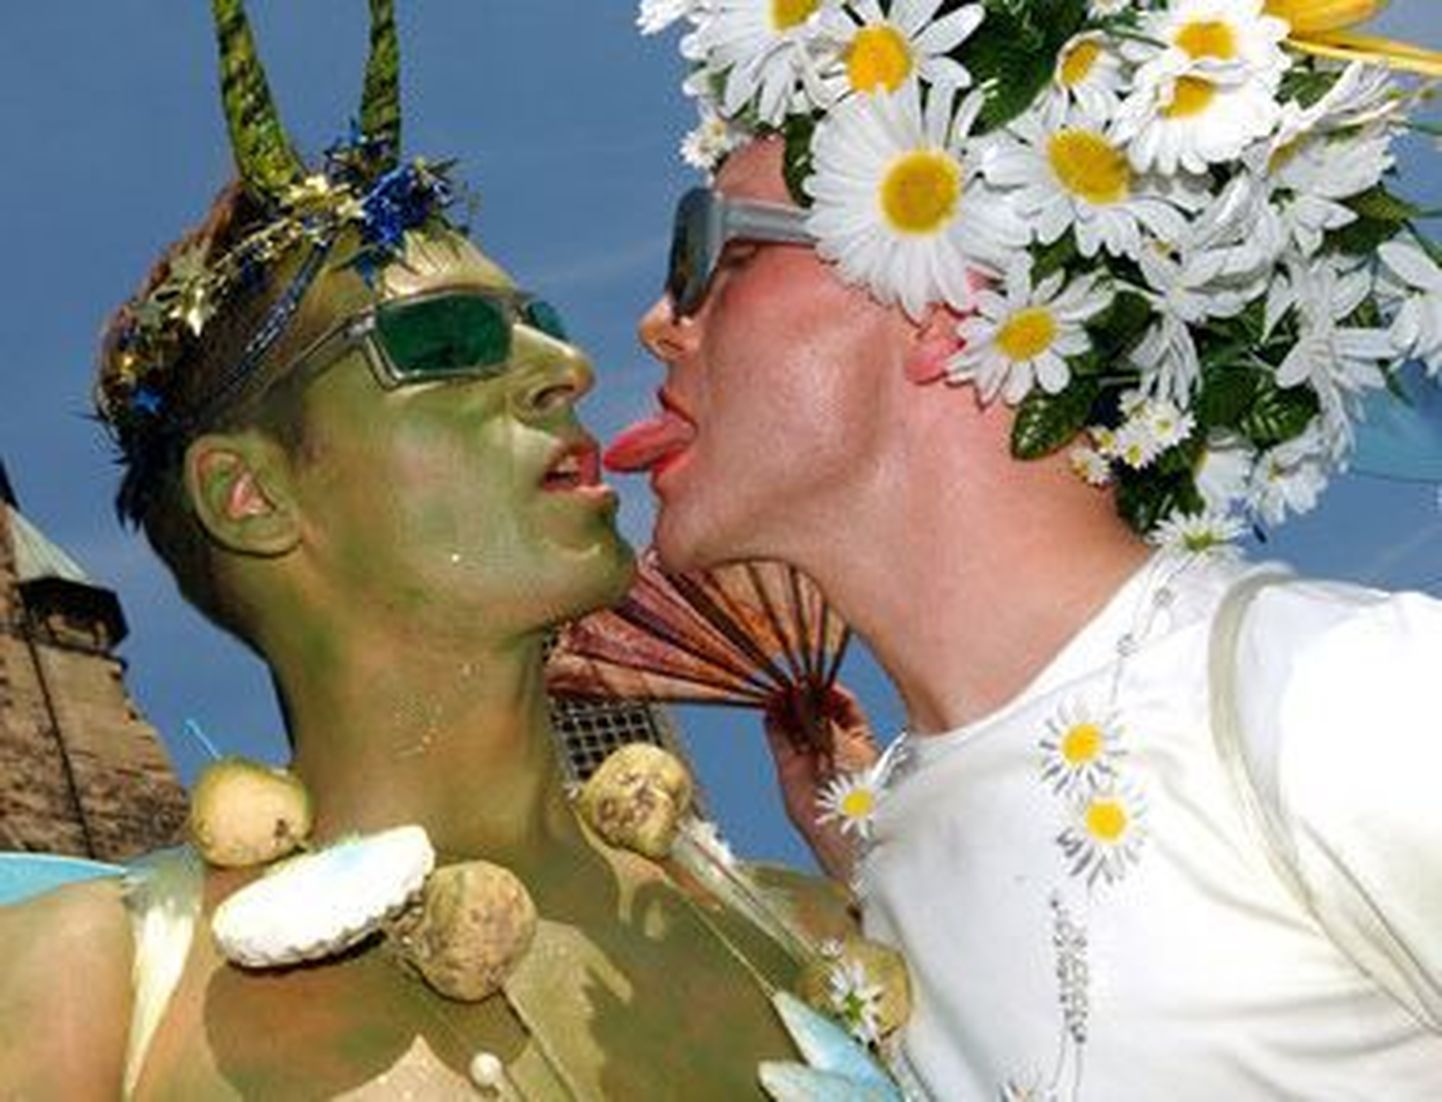 Stockholmis langes homoseksuaal pussitamise ohvriks